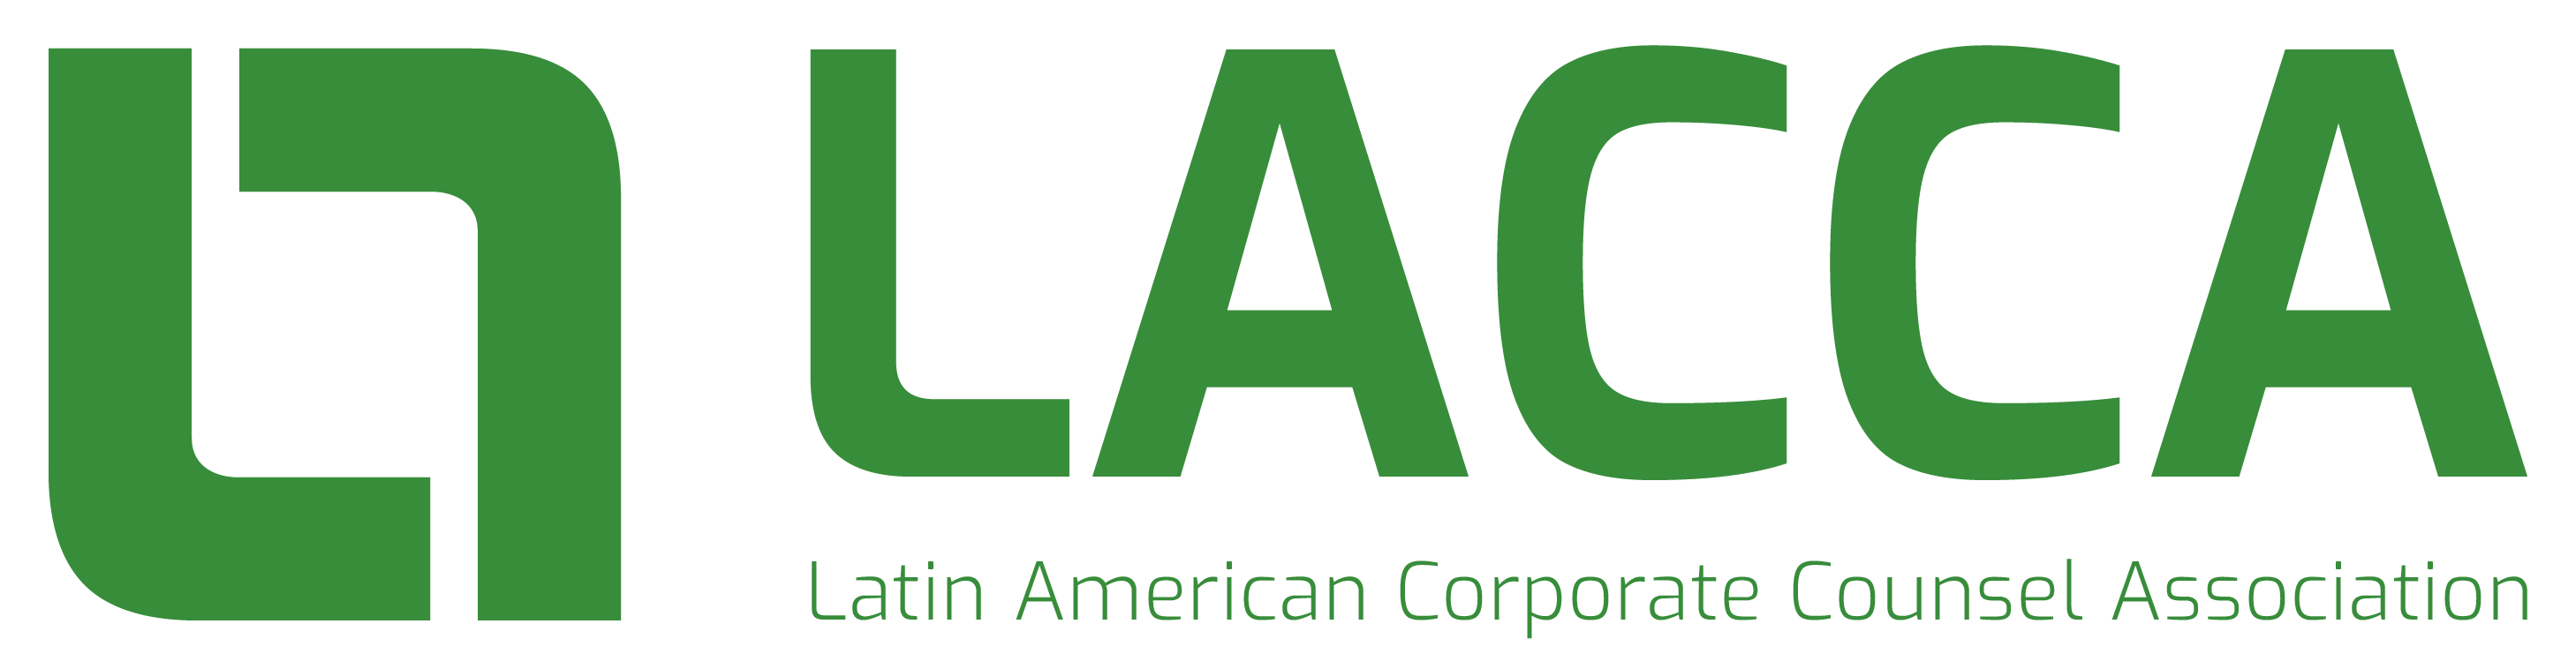 You are currently viewing M&M News – Reconocimiento por la Asociación Latinoamericana de Asesores Corporativos (LACCA)